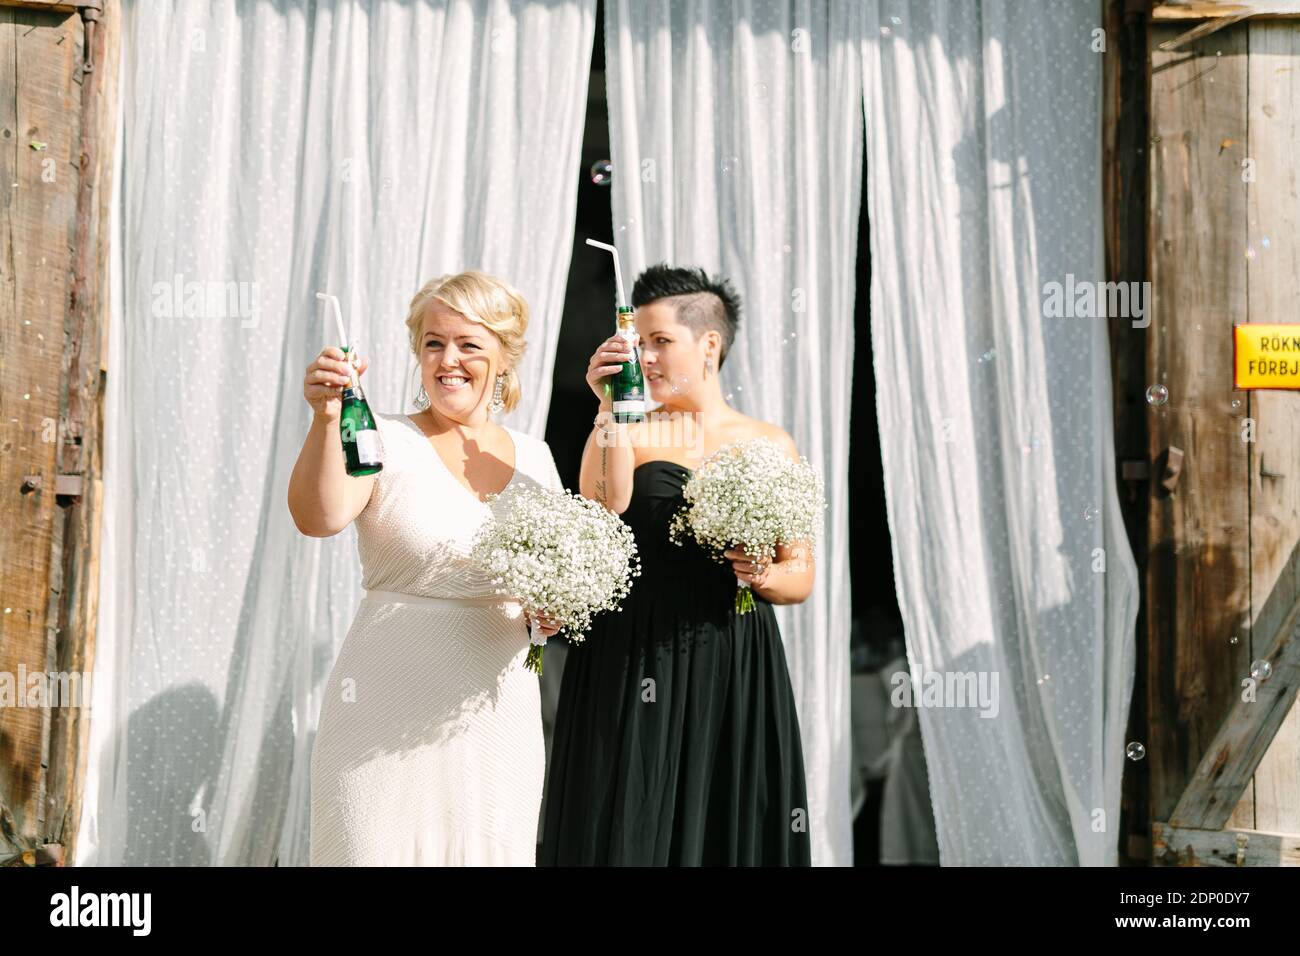 Happy brides at wedding reception Stock Photo